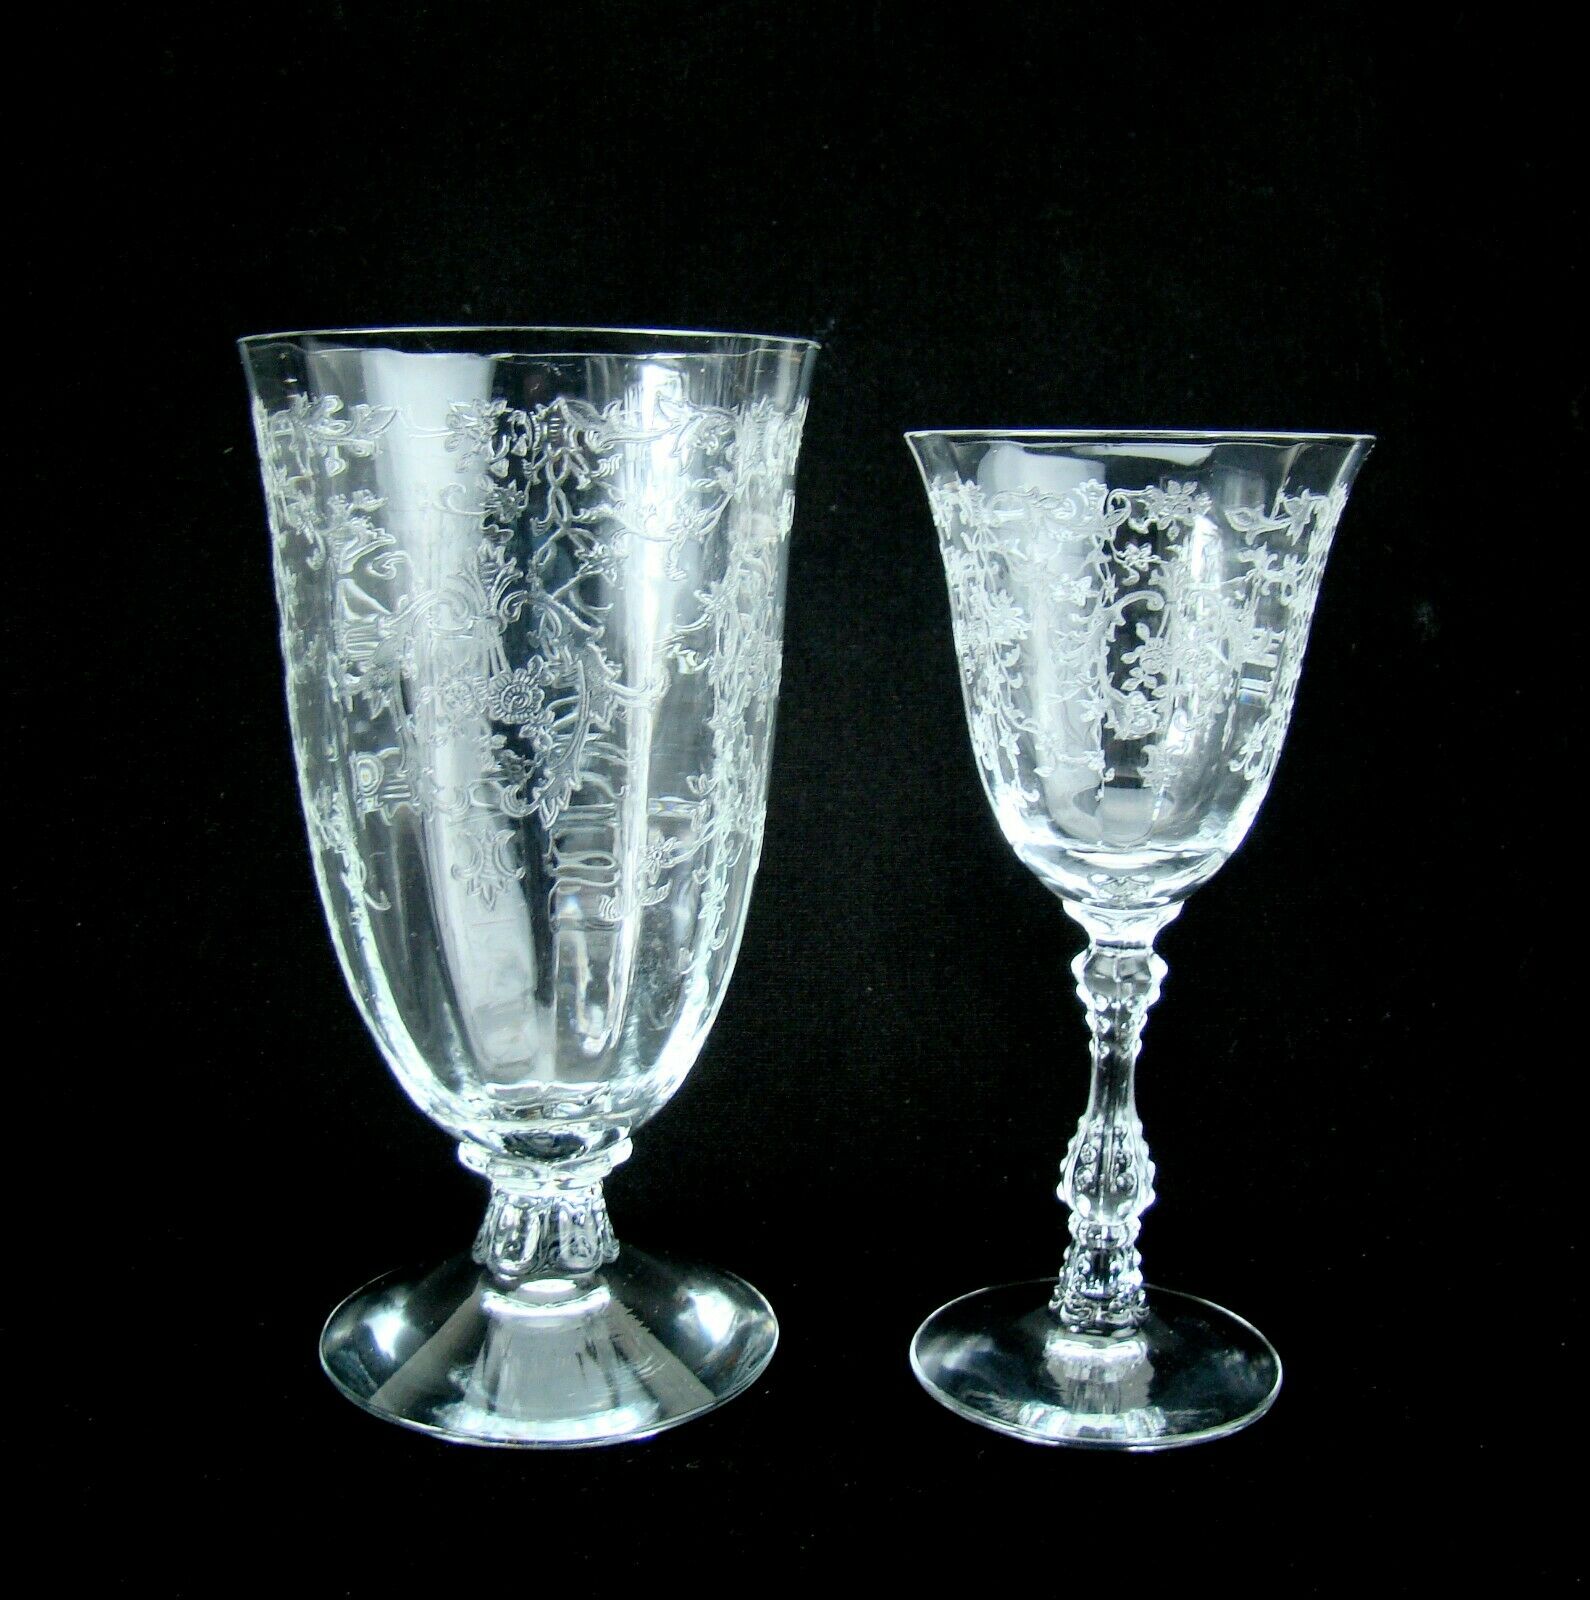 2 Vintage Fostoria "navarre" Etch Optic Crystal Stems 1 Iced Tea & 1 Wine Glass